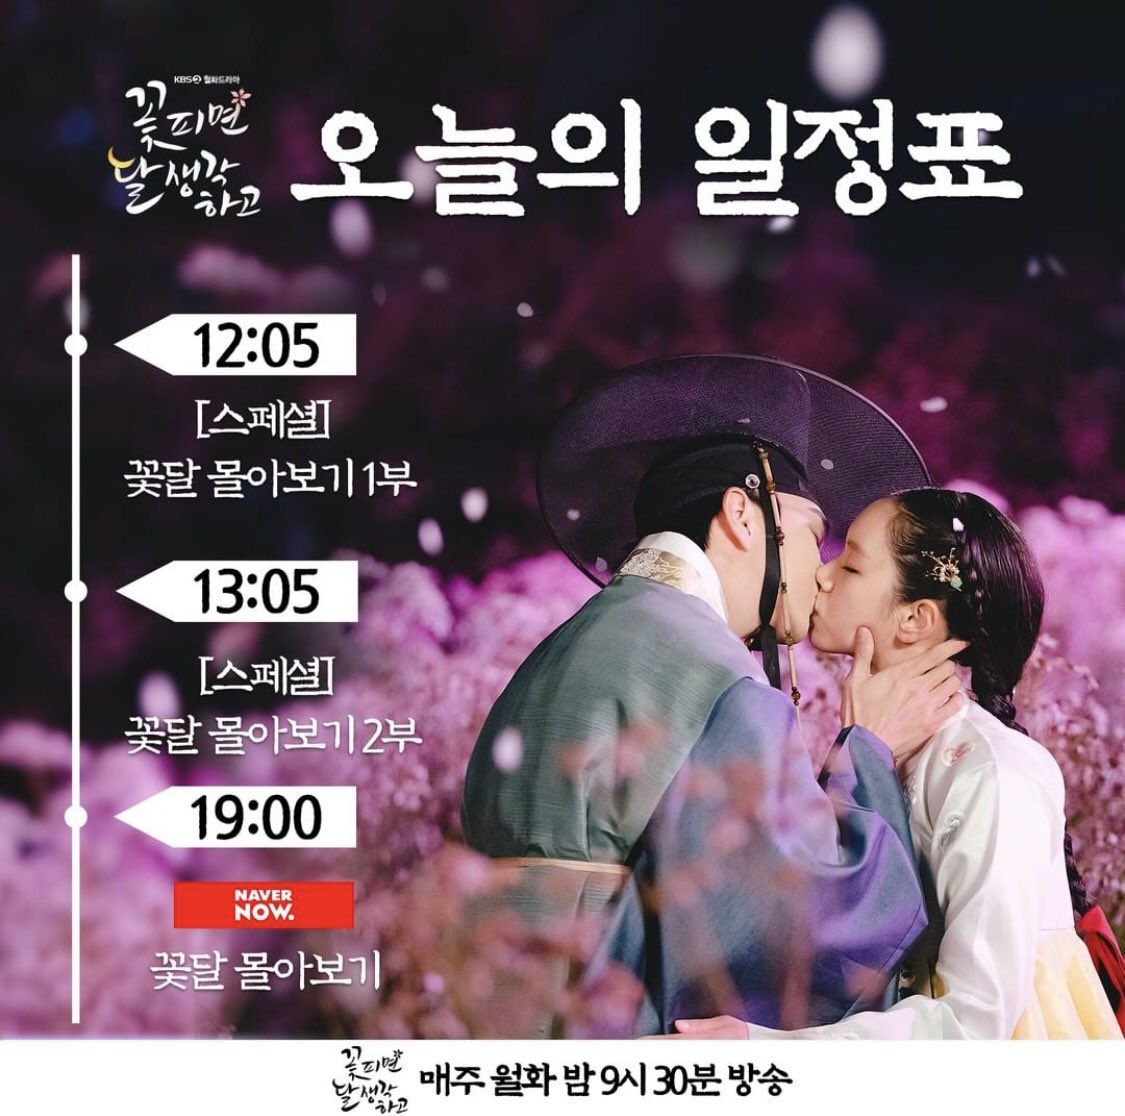 Moonshine Tidak Tayang Malam Ini, Episode Spesial Hari Ini Disiarkan Mulai Pukul 12.05 KST di KBS